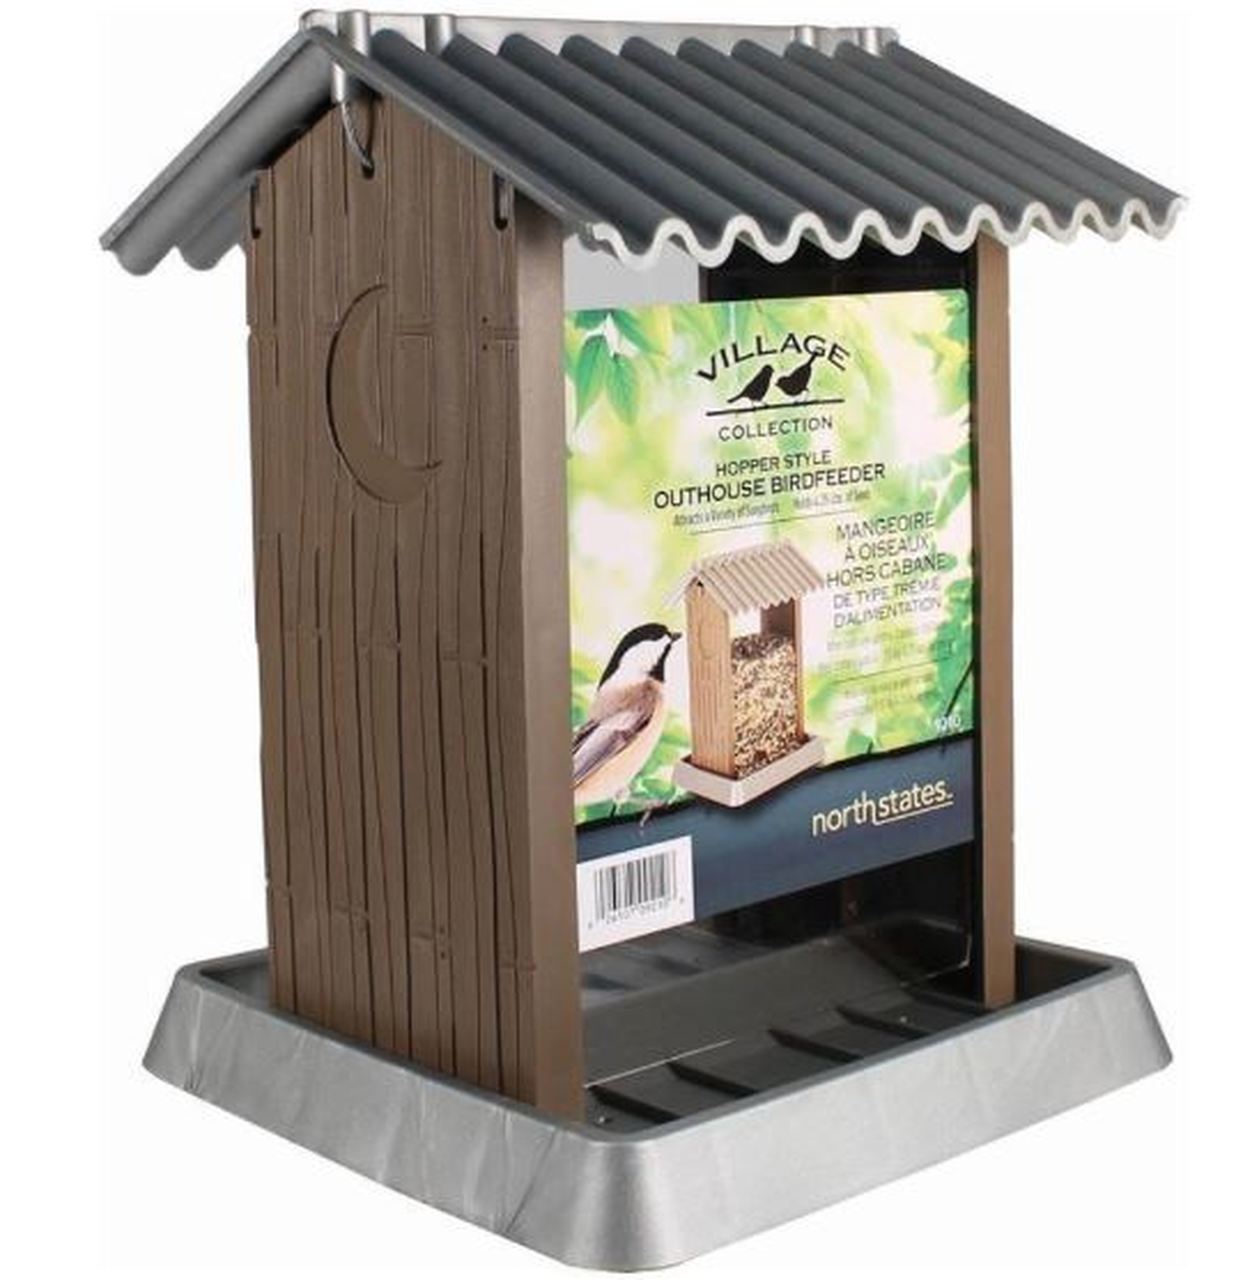 Village Collection Outhouse Bird Feeder